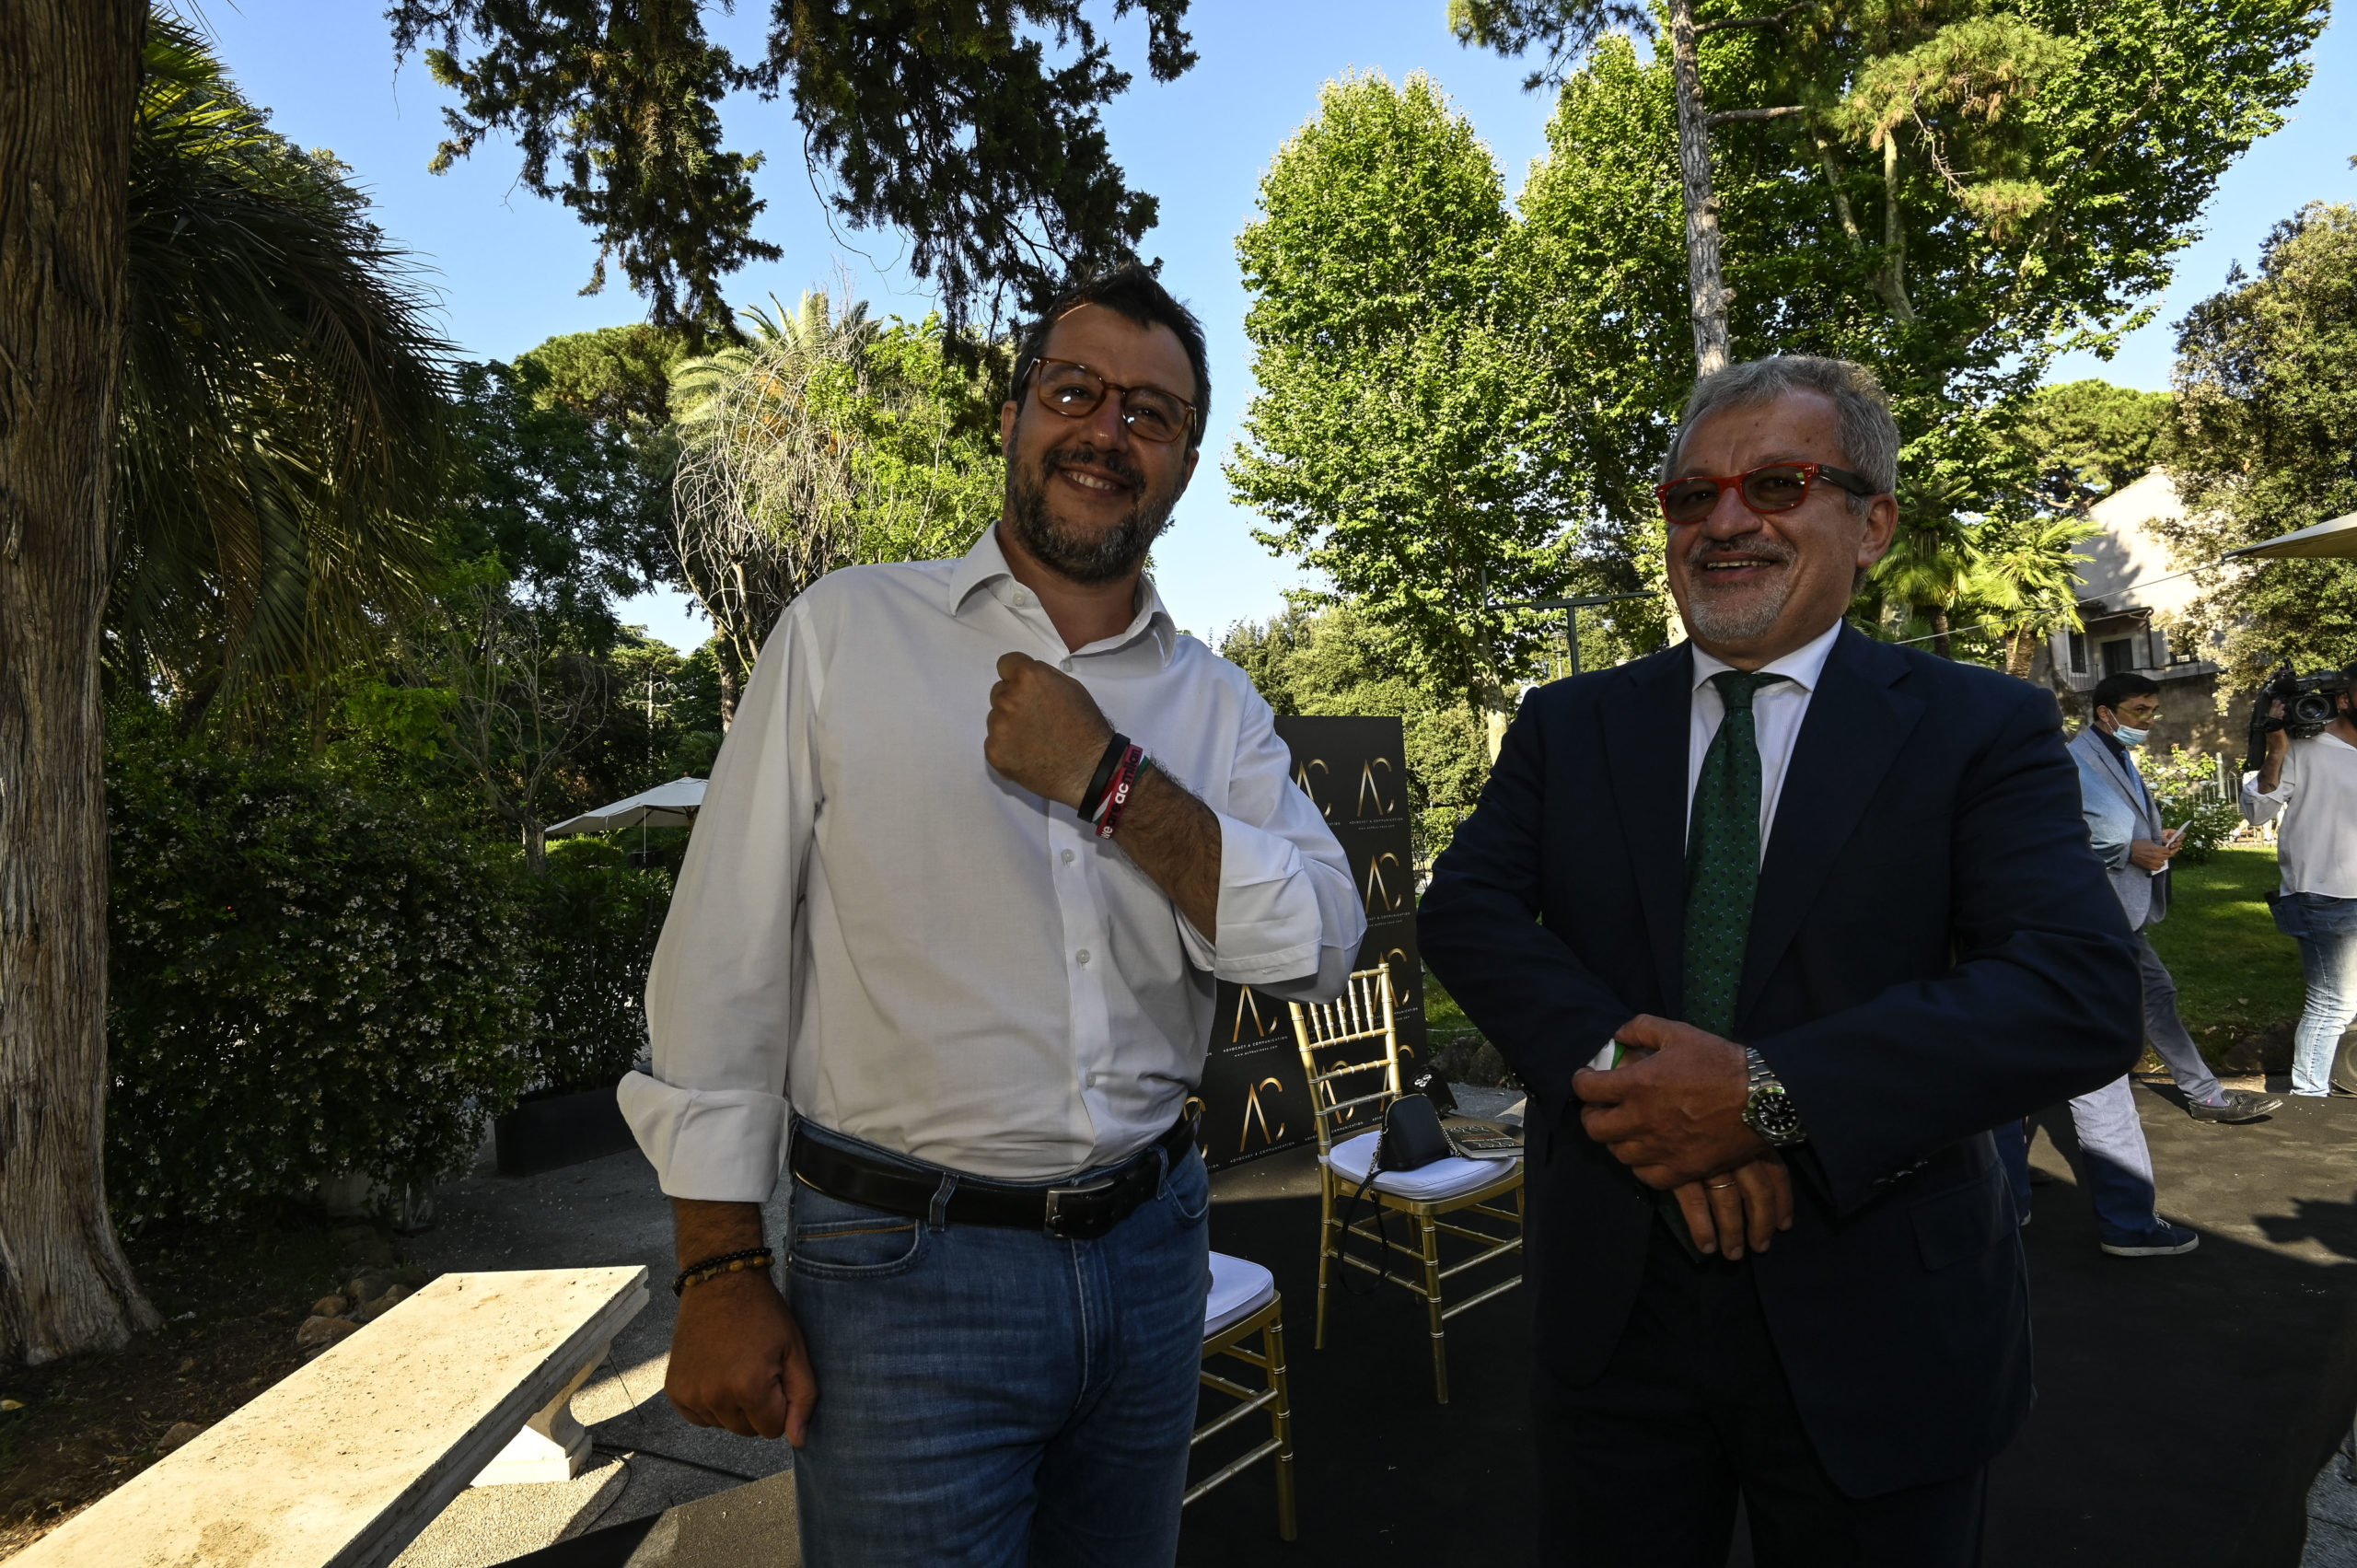 Addio all’ex ministro Maroni. Salvini: “Riforma pensioni dedicata a lui”